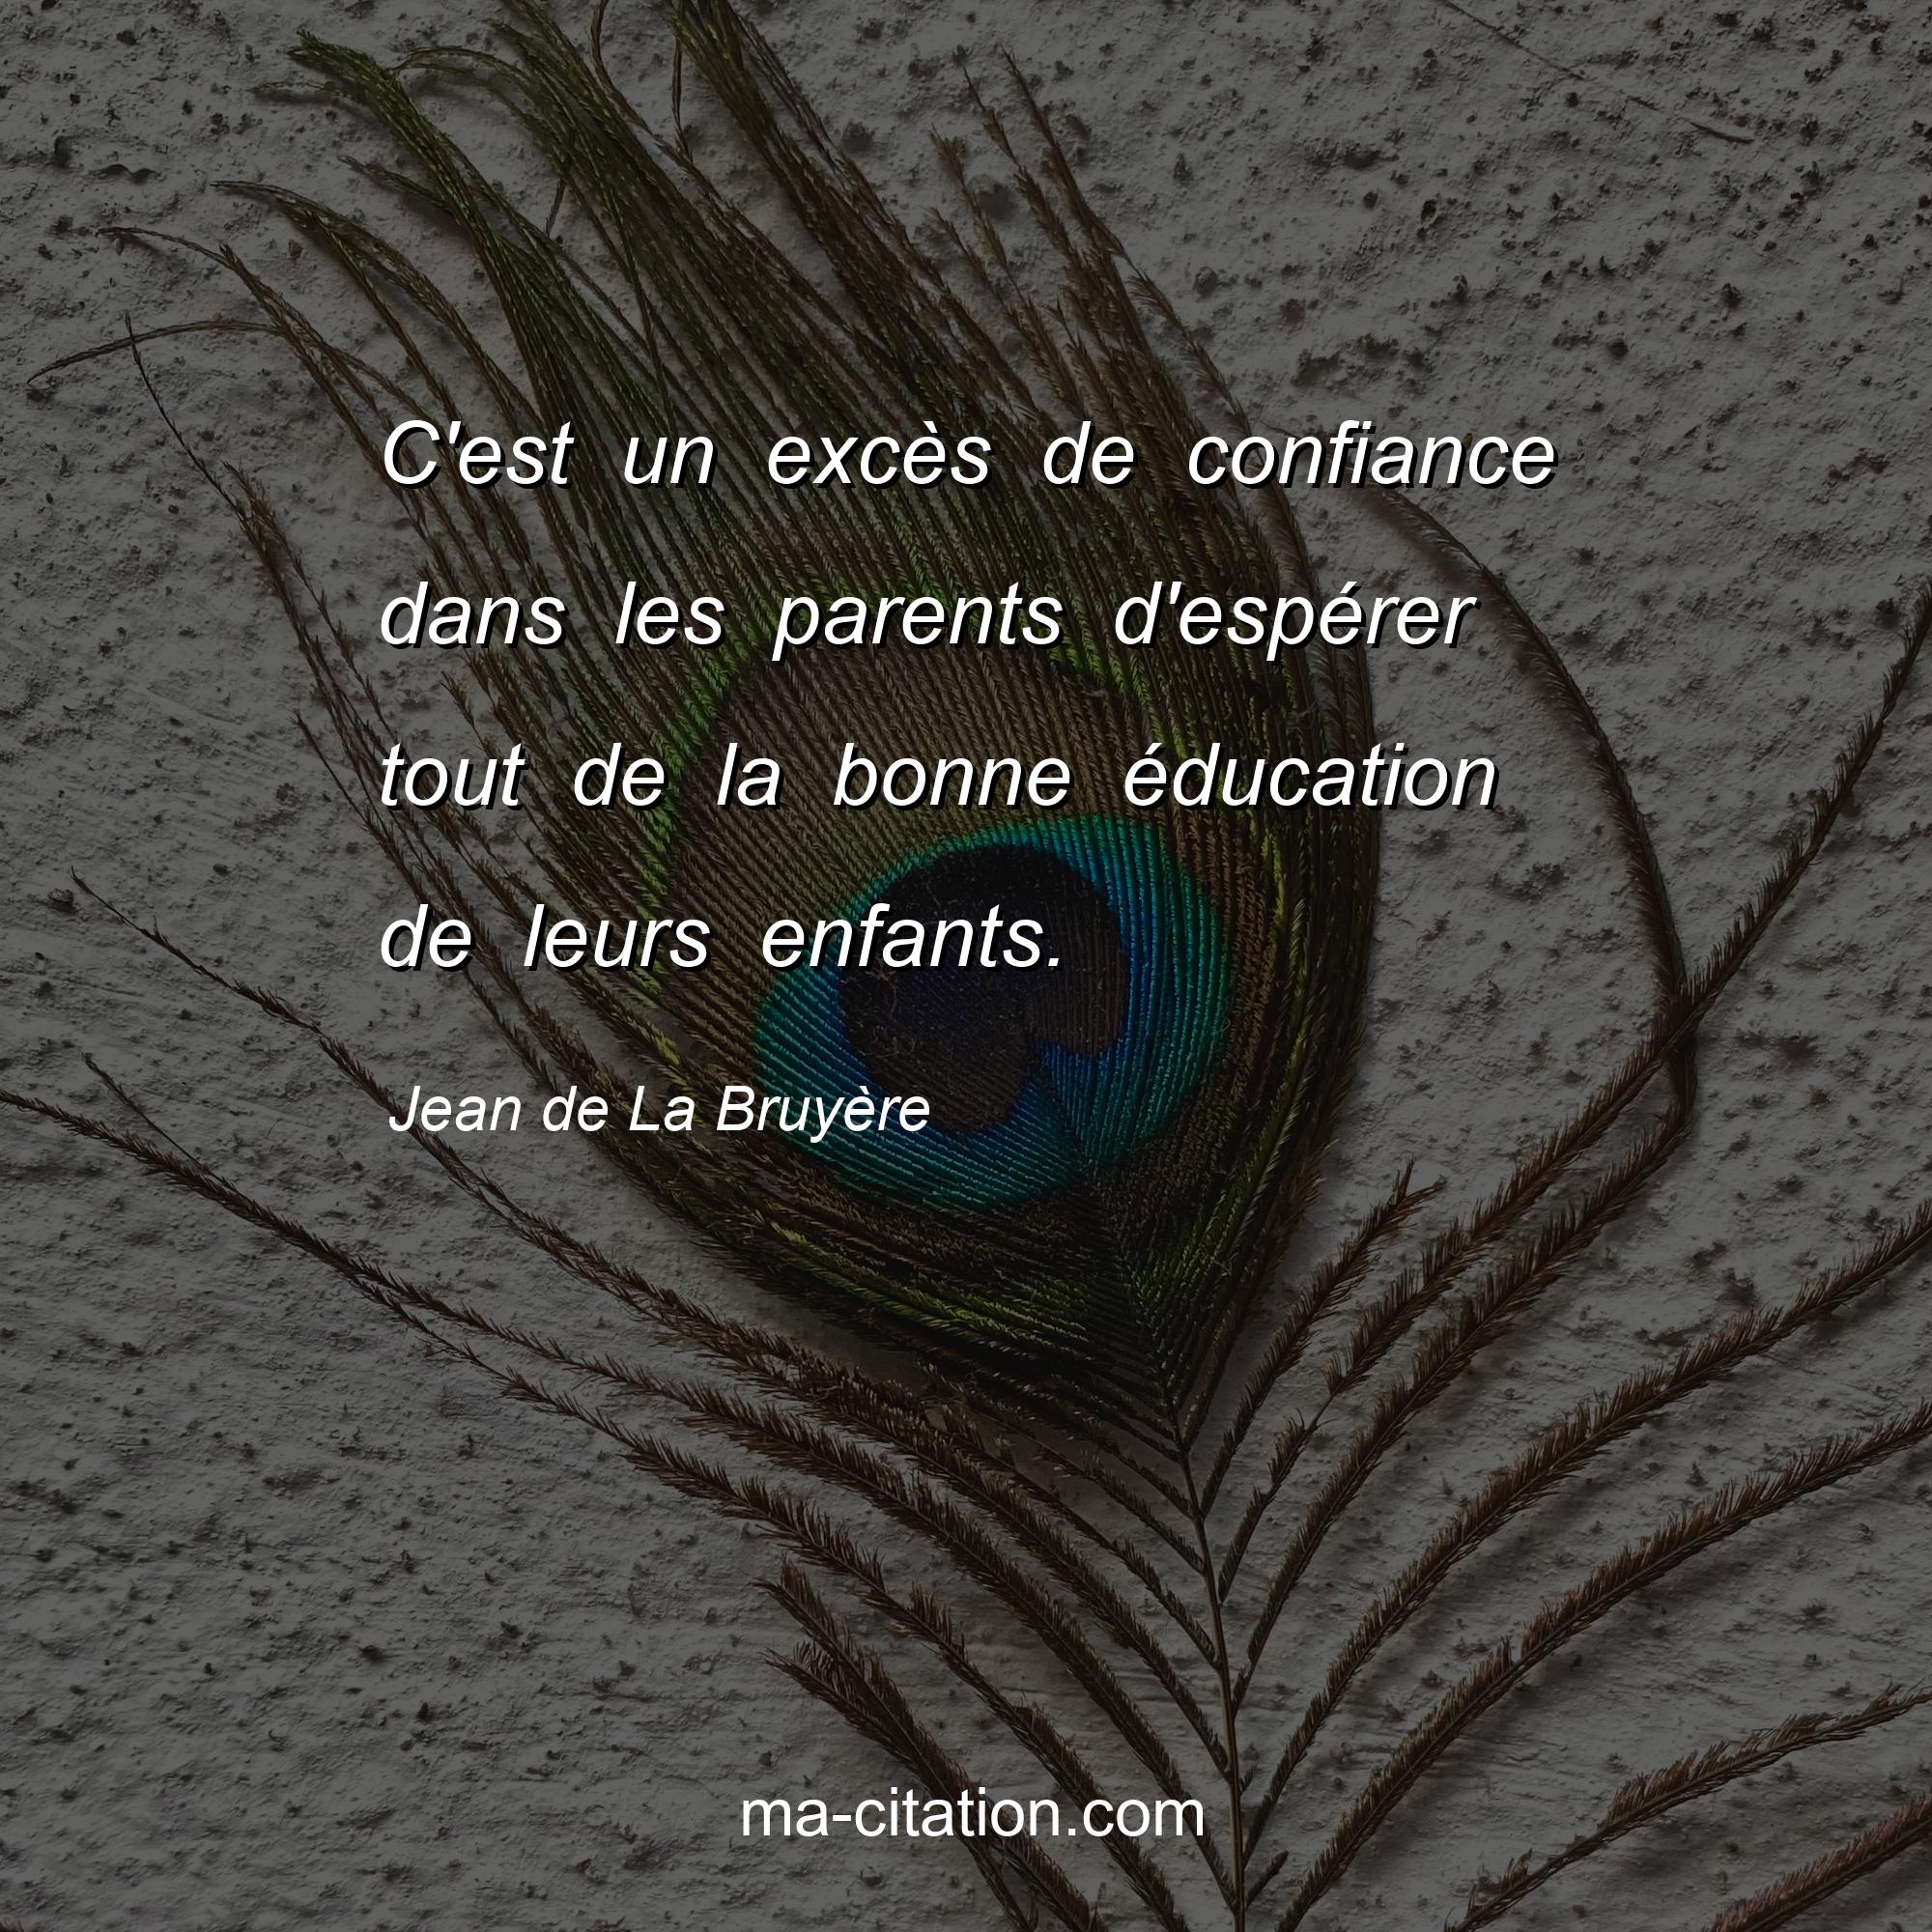 Jean de La Bruyère : C'est un excès de confiance dans les parents d'espérer tout de la bonne éducation de leurs enfants.